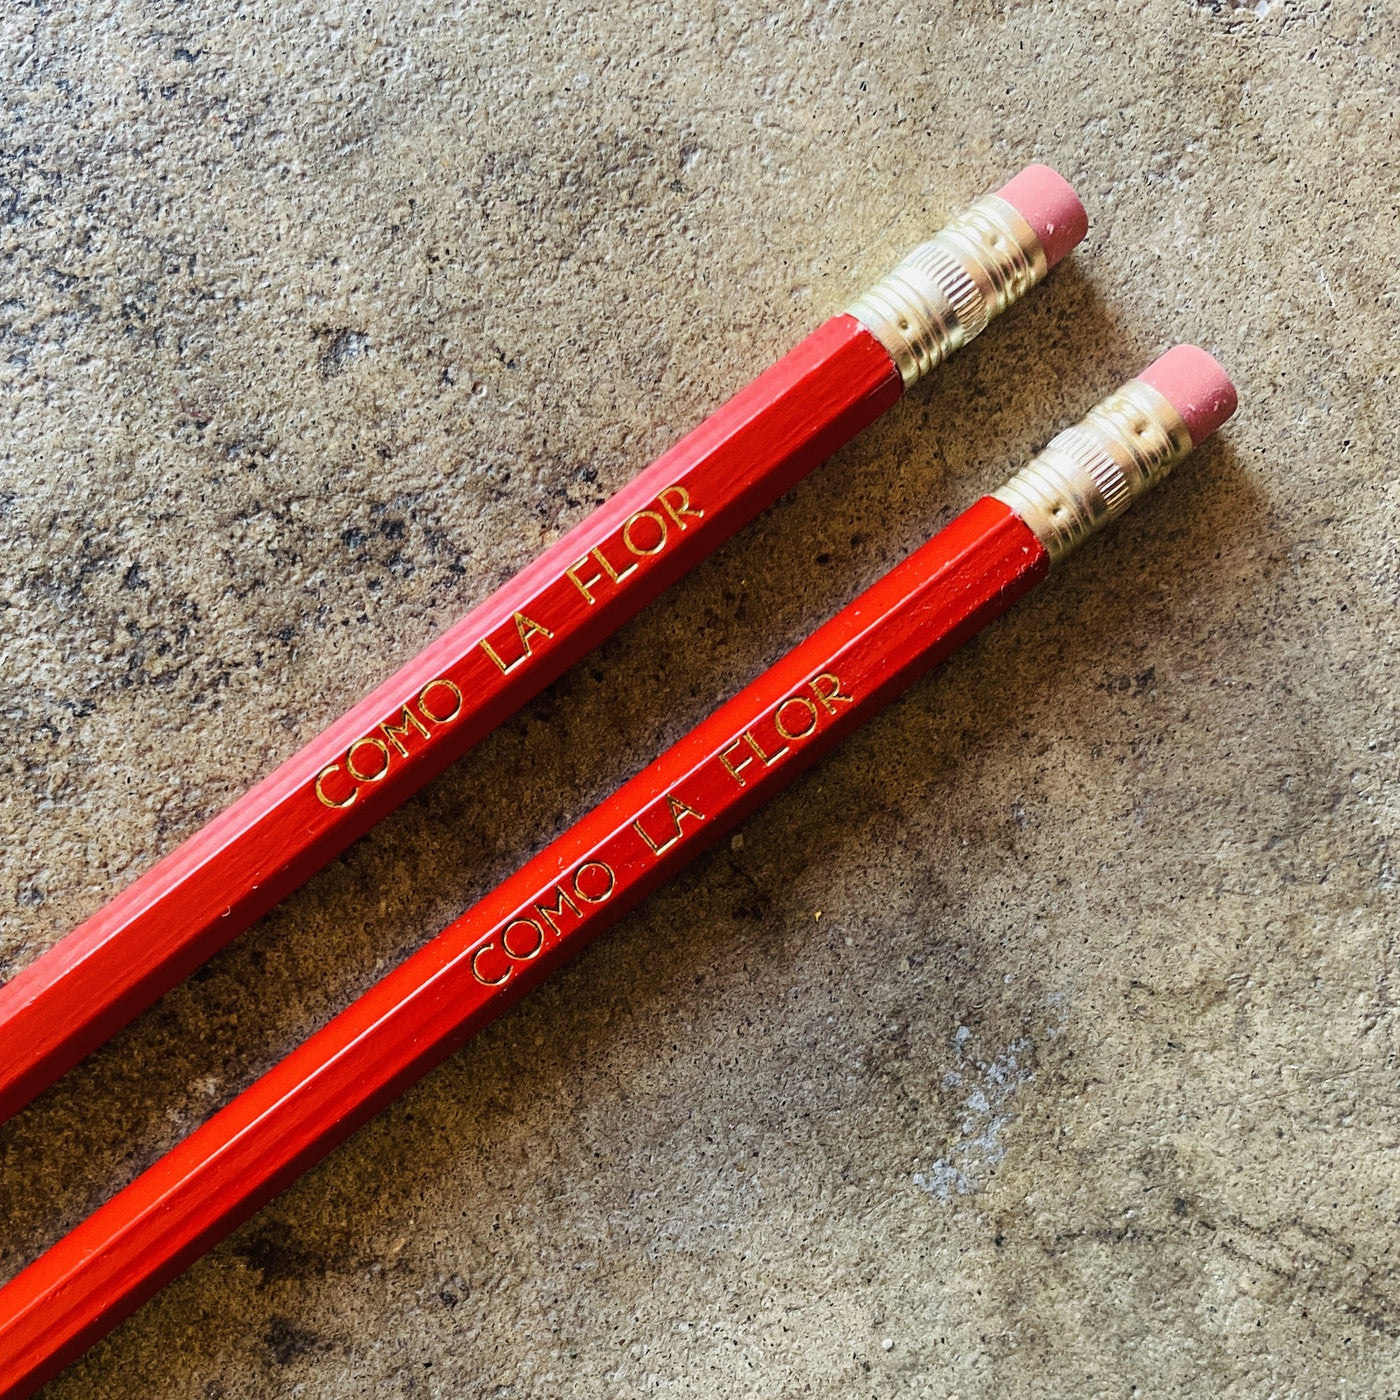 Como La Flor phrase pencils in red.